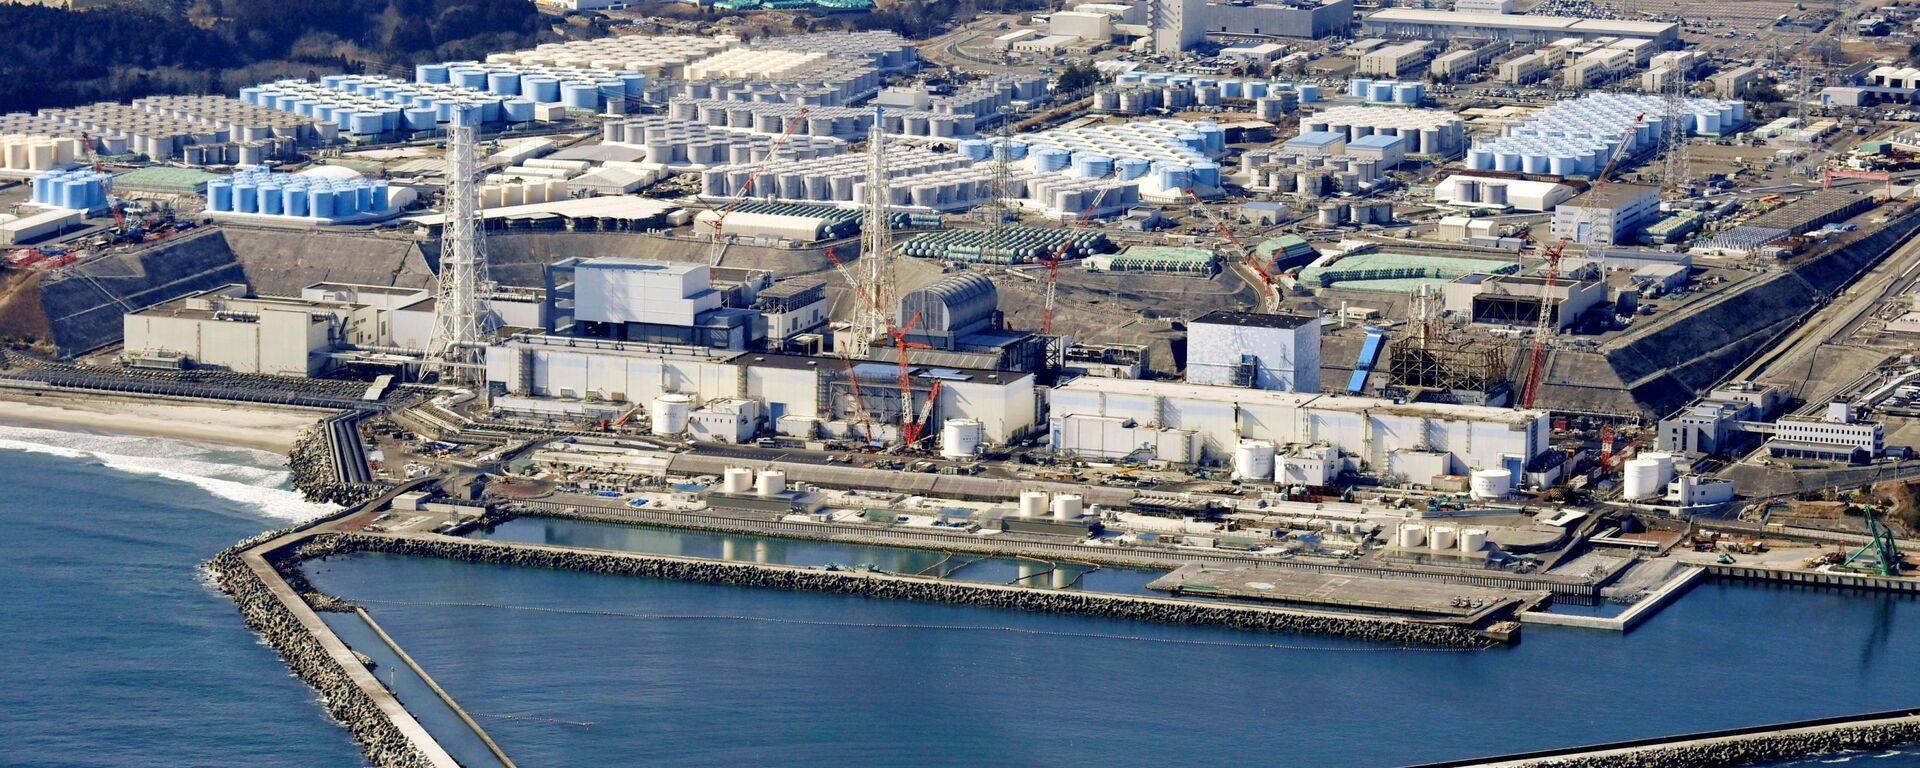 福岛核电站发现大范围放射性核燃料碎片！“排放计划不变”